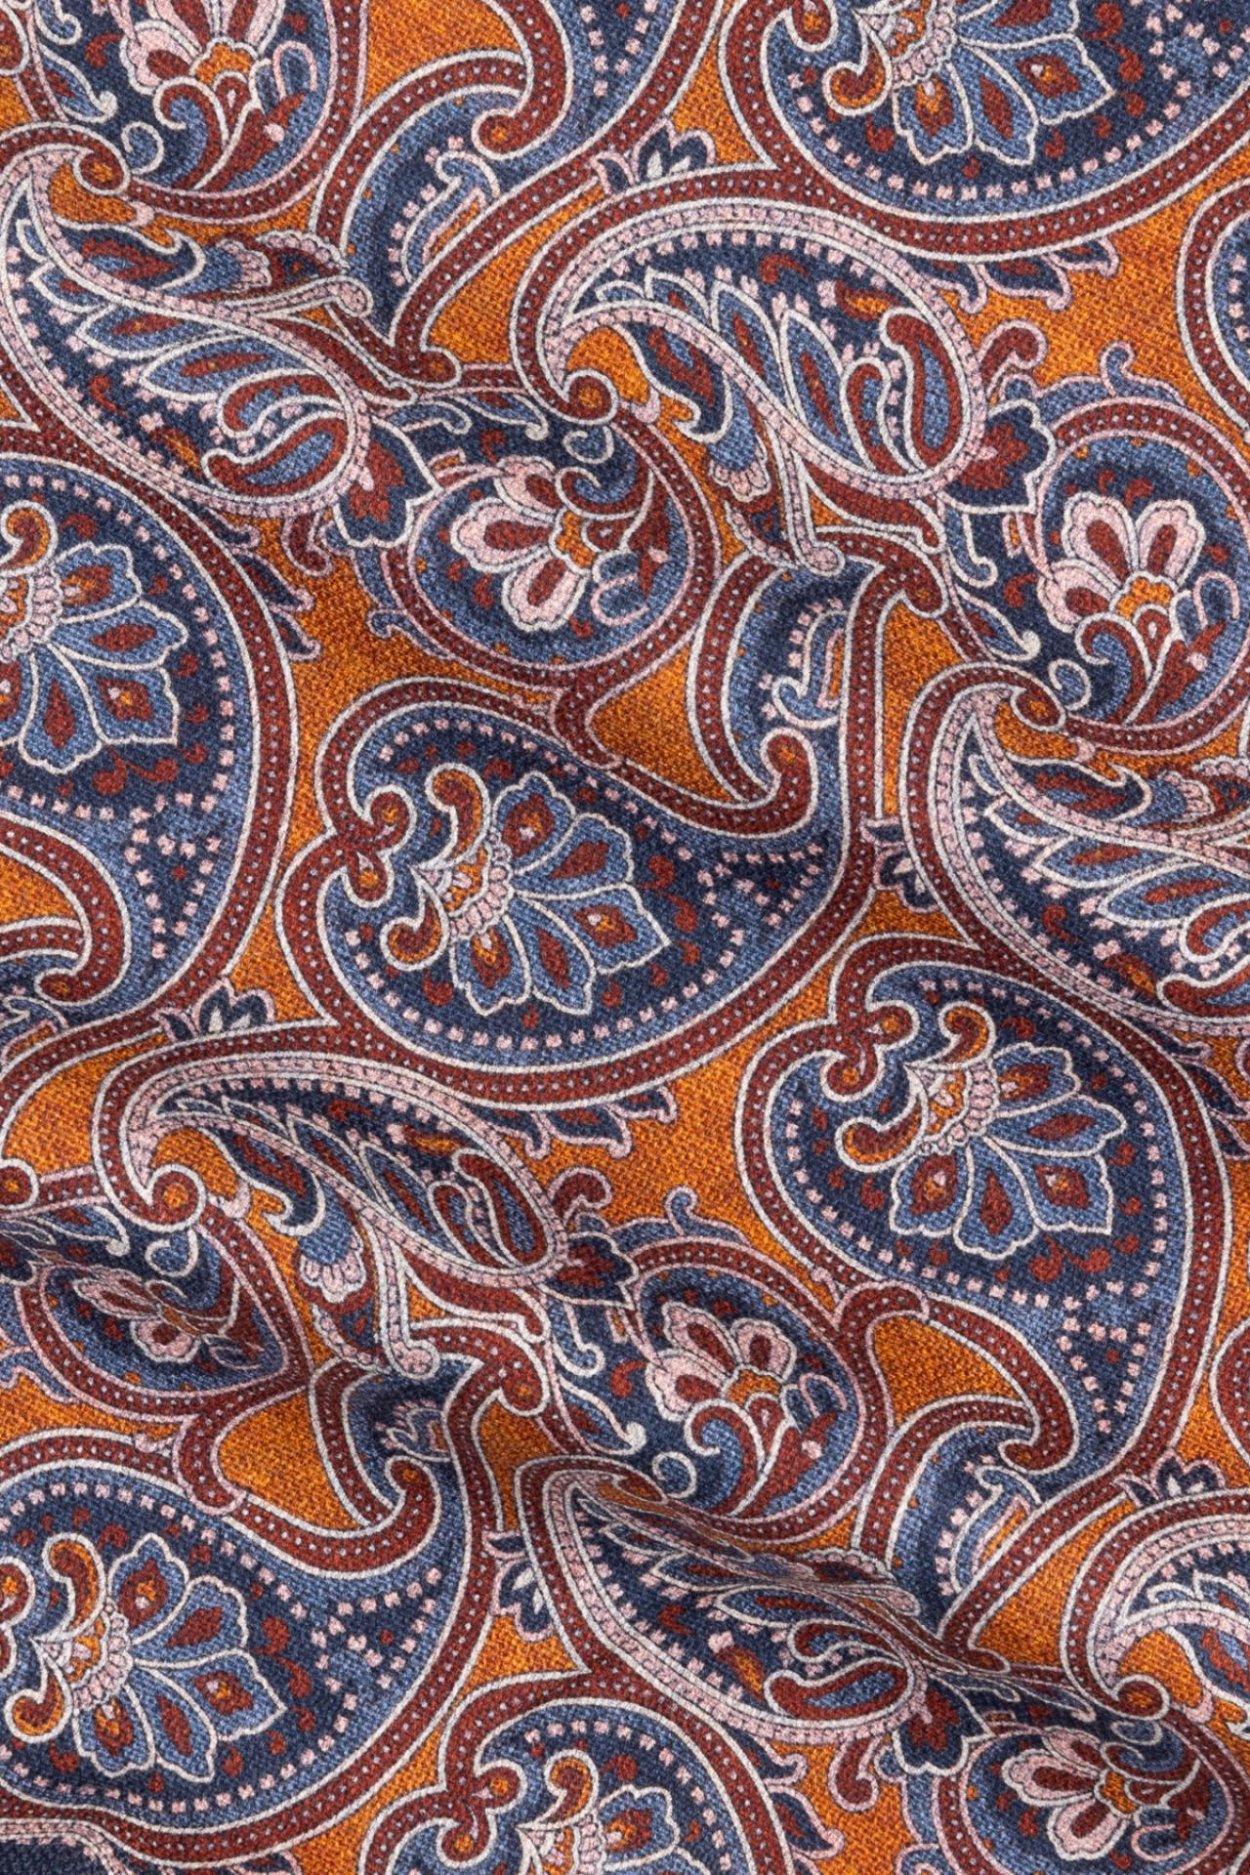 Oranžový hedvábný kapesníček se vzorem